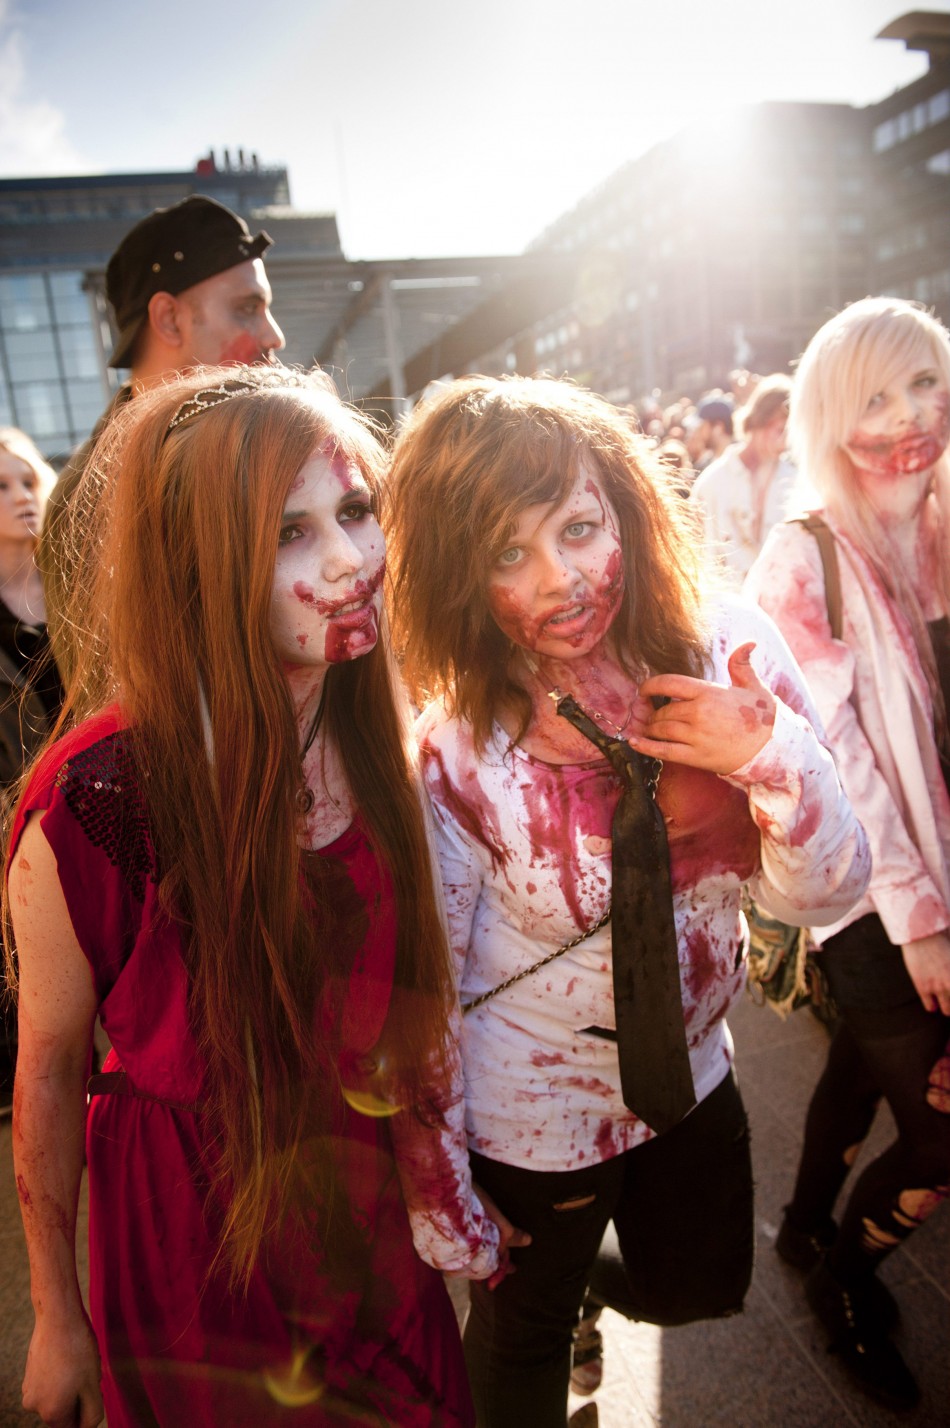 Zombie dressed